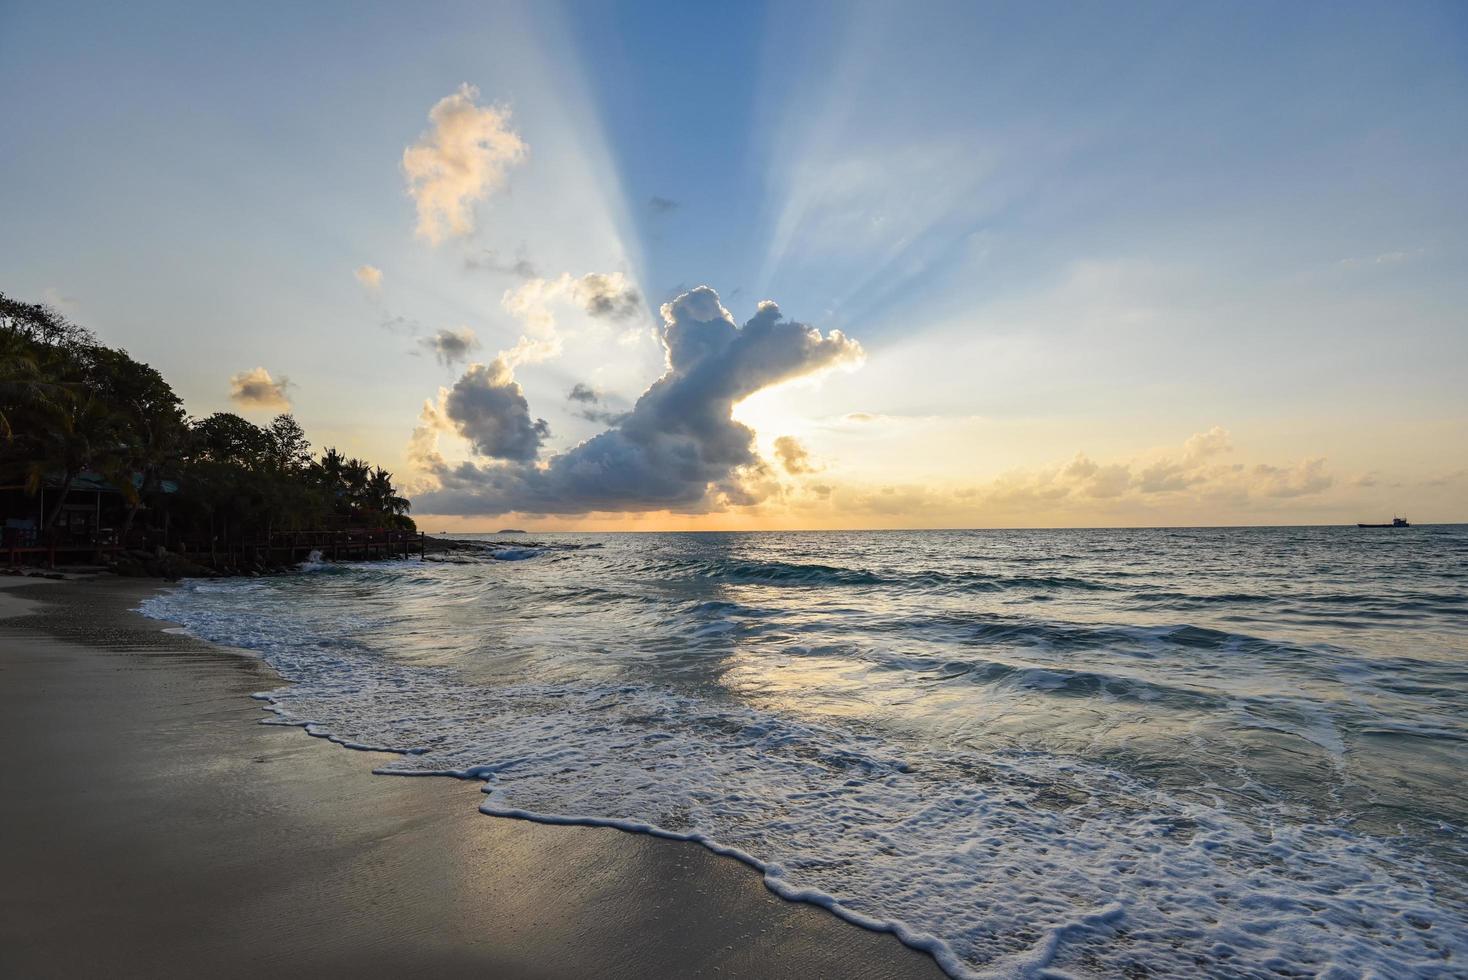 incroyable plage tropicale de sable avec silhouette de la plage tropicale - ciel dramatique de la mer au lever ou au coucher du soleil photo